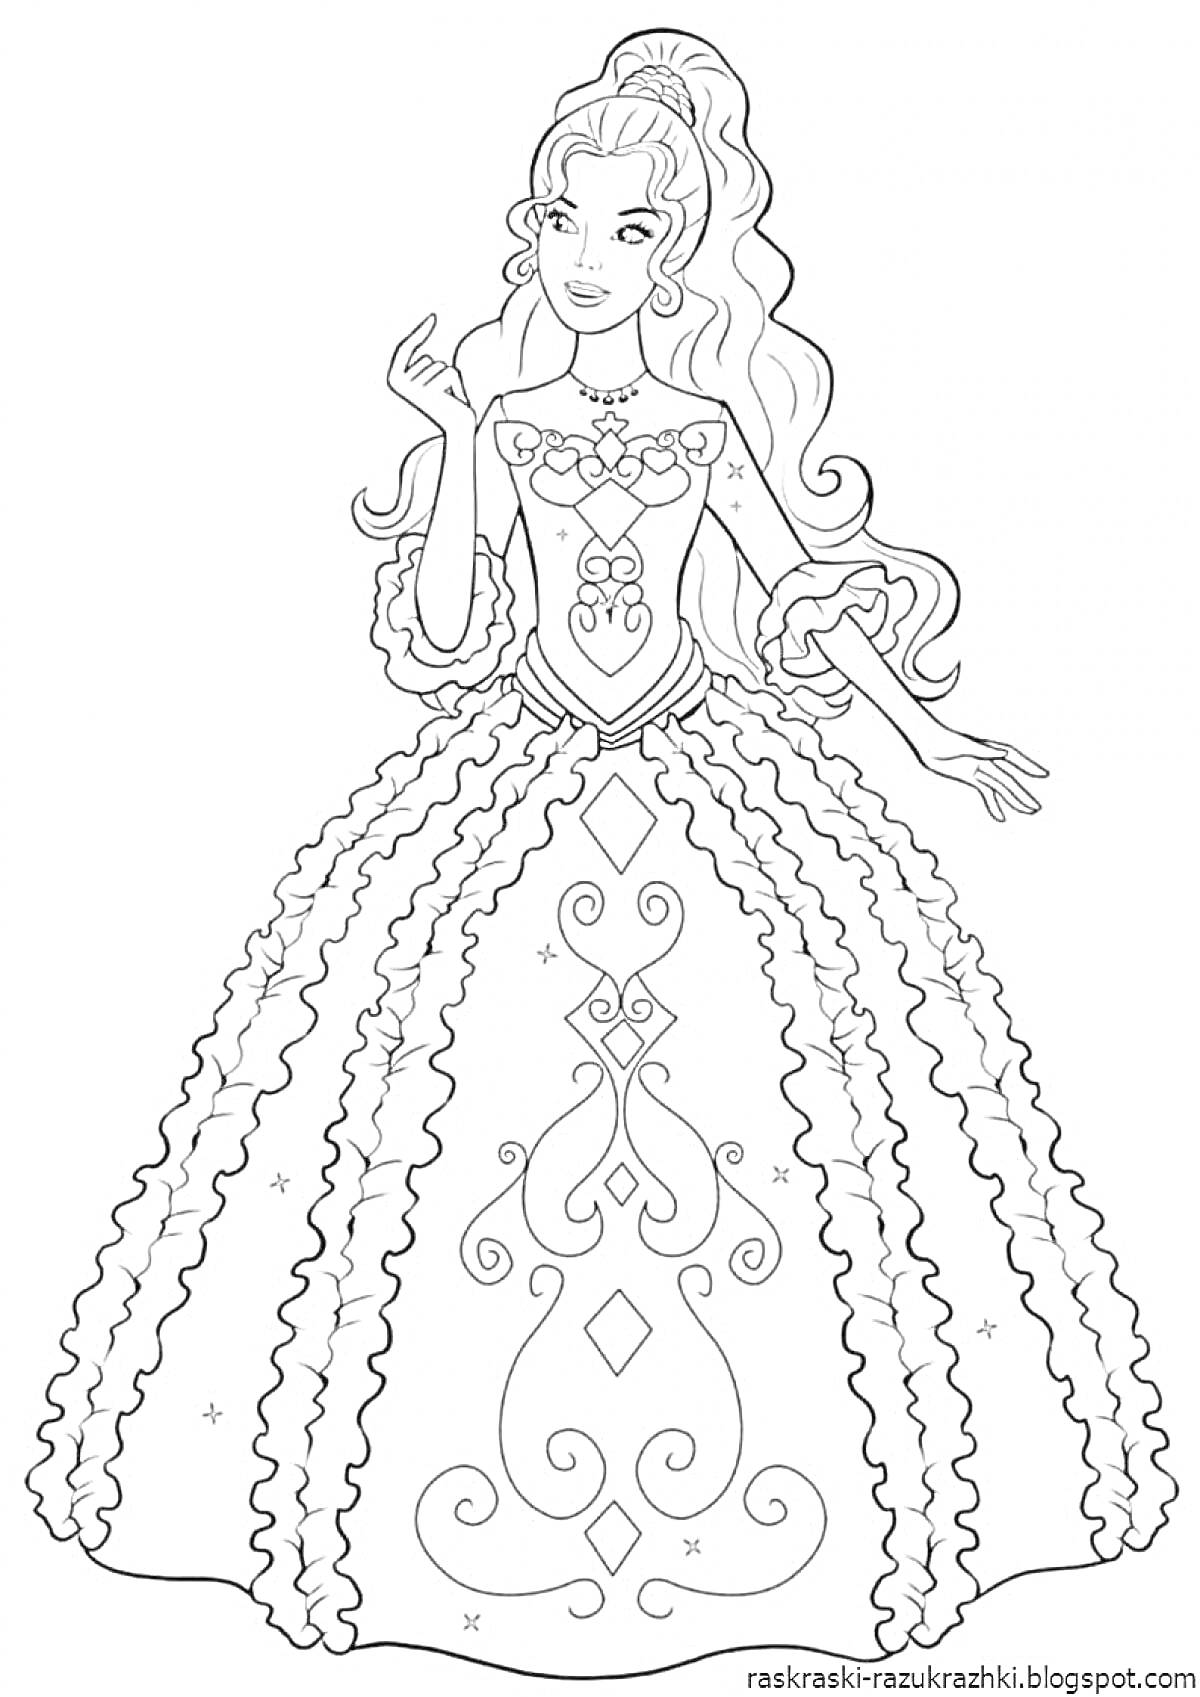 Раскраска Принцесса с длинными волосами в пышном платье с декоративным узором